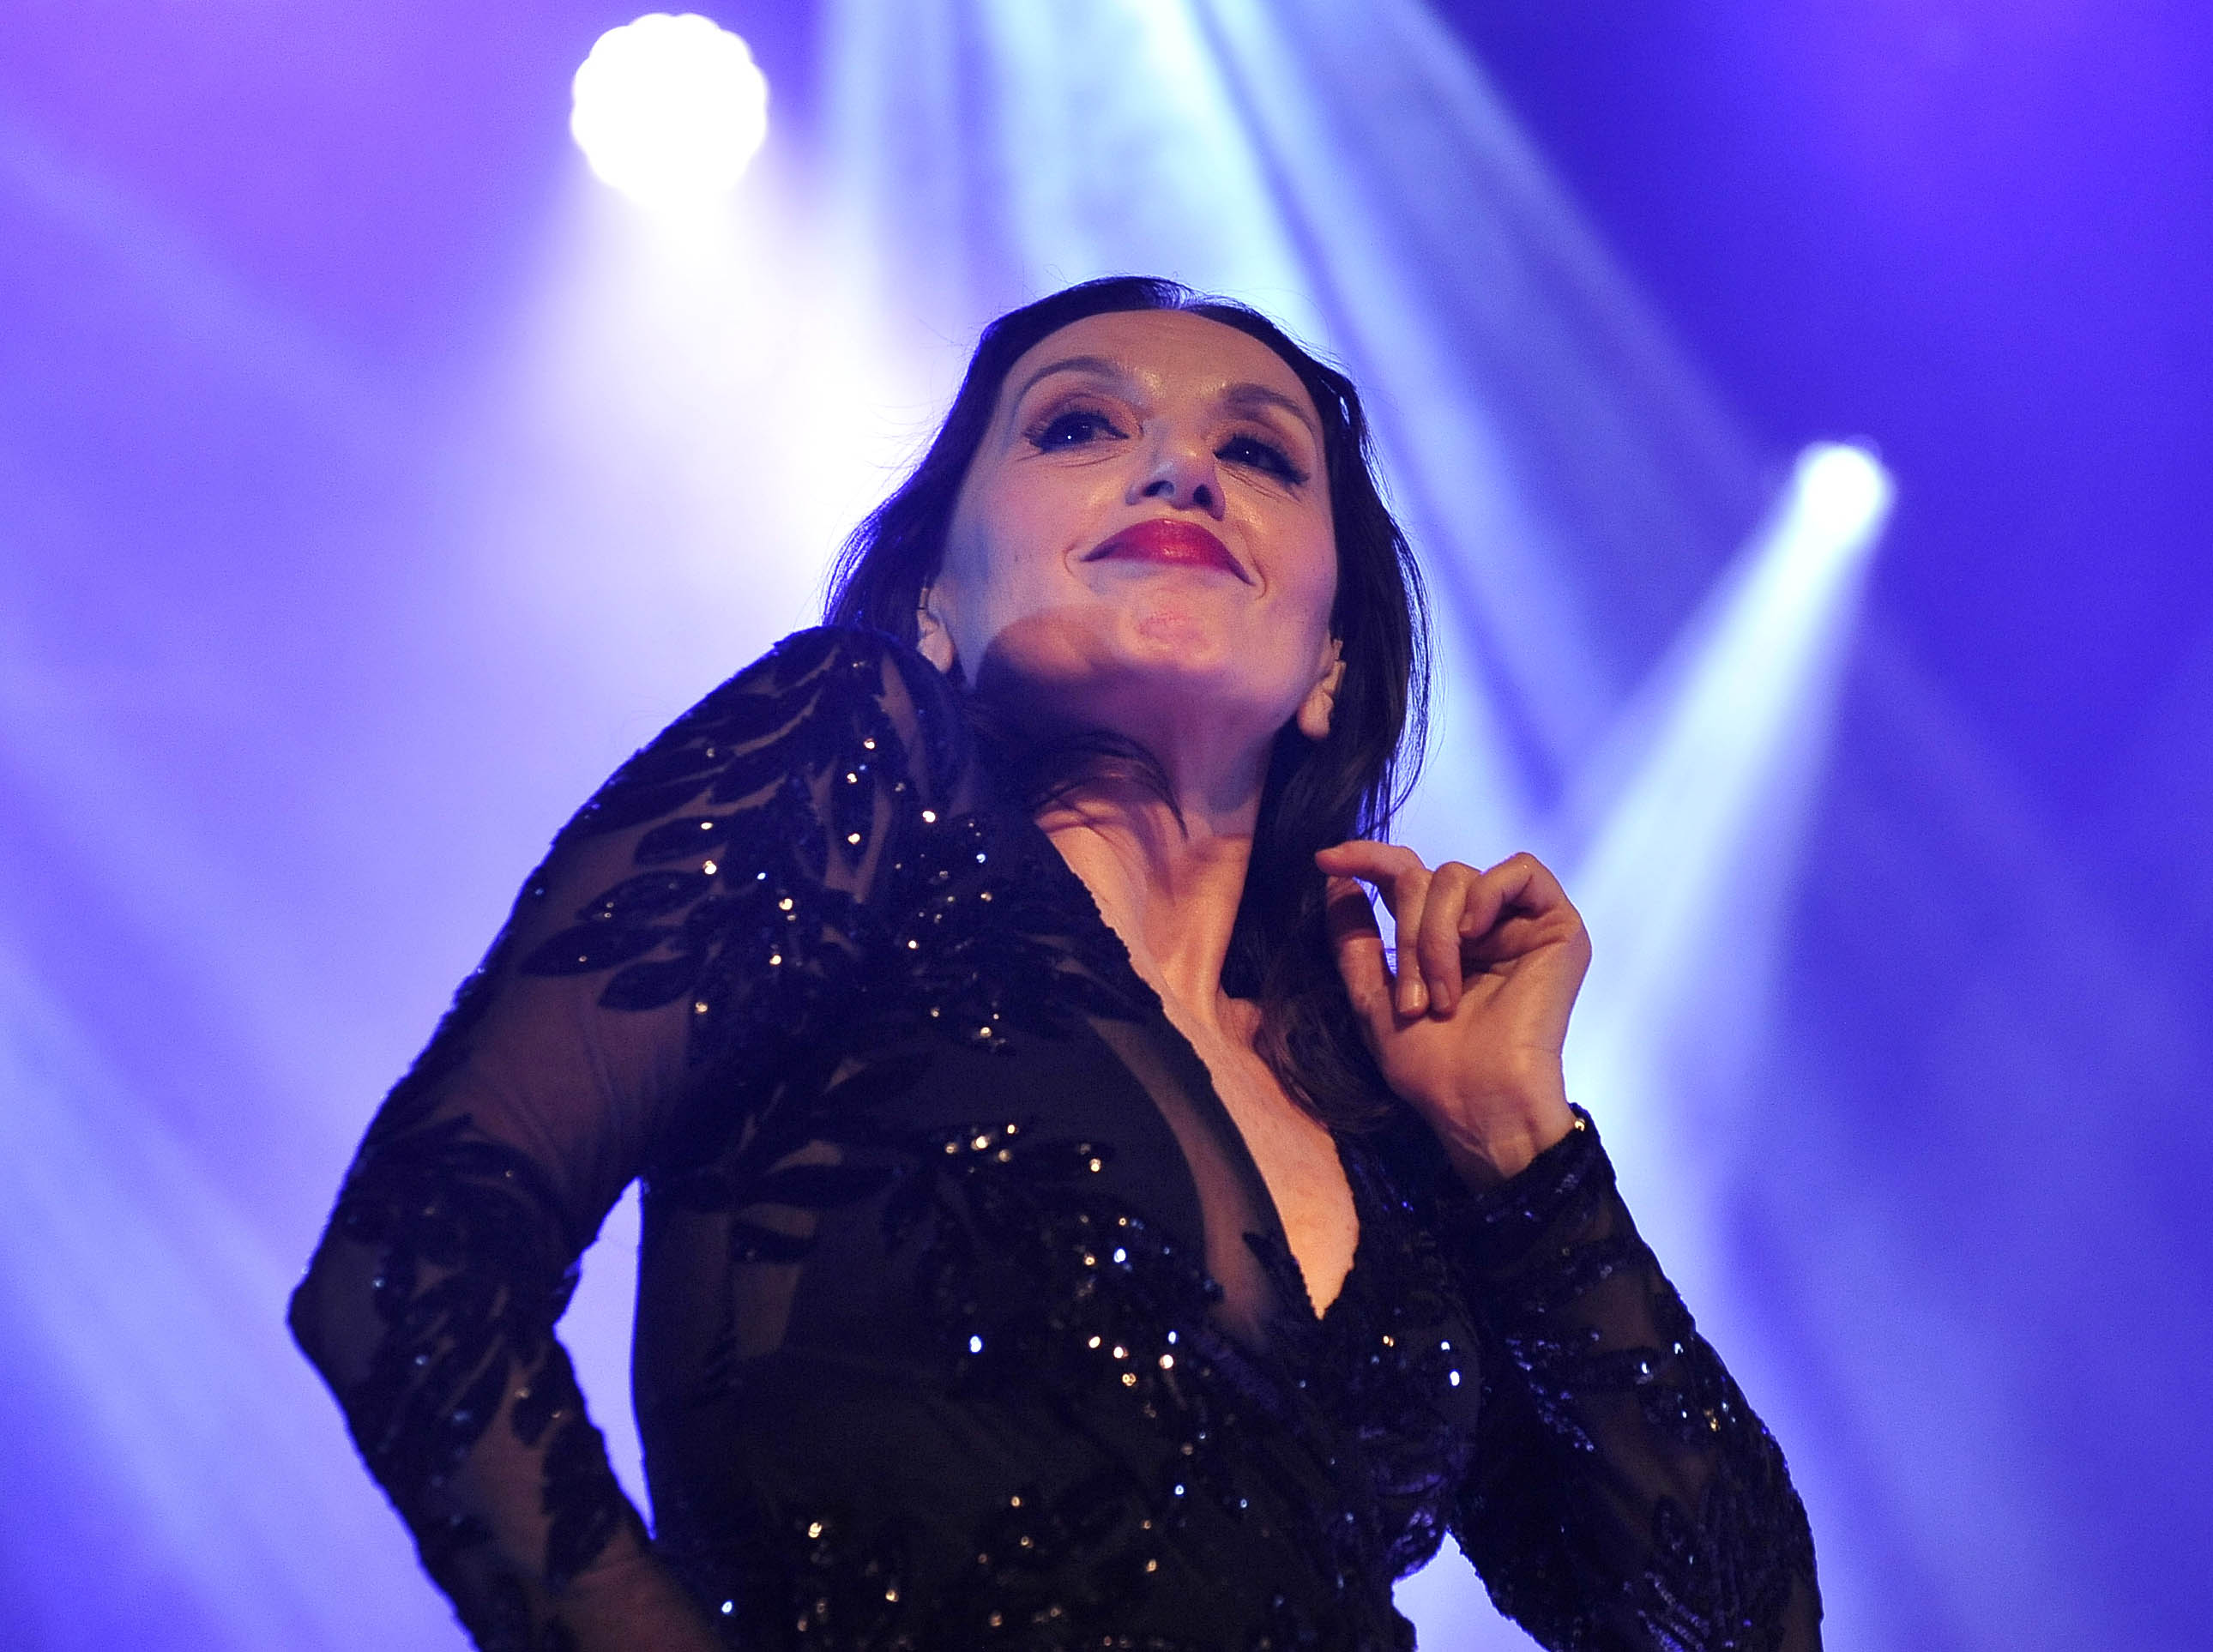 La cantante gallega se llevó de Granada una ovación de más de cinco minutos por el público, que llenó el Palacio de Congresos